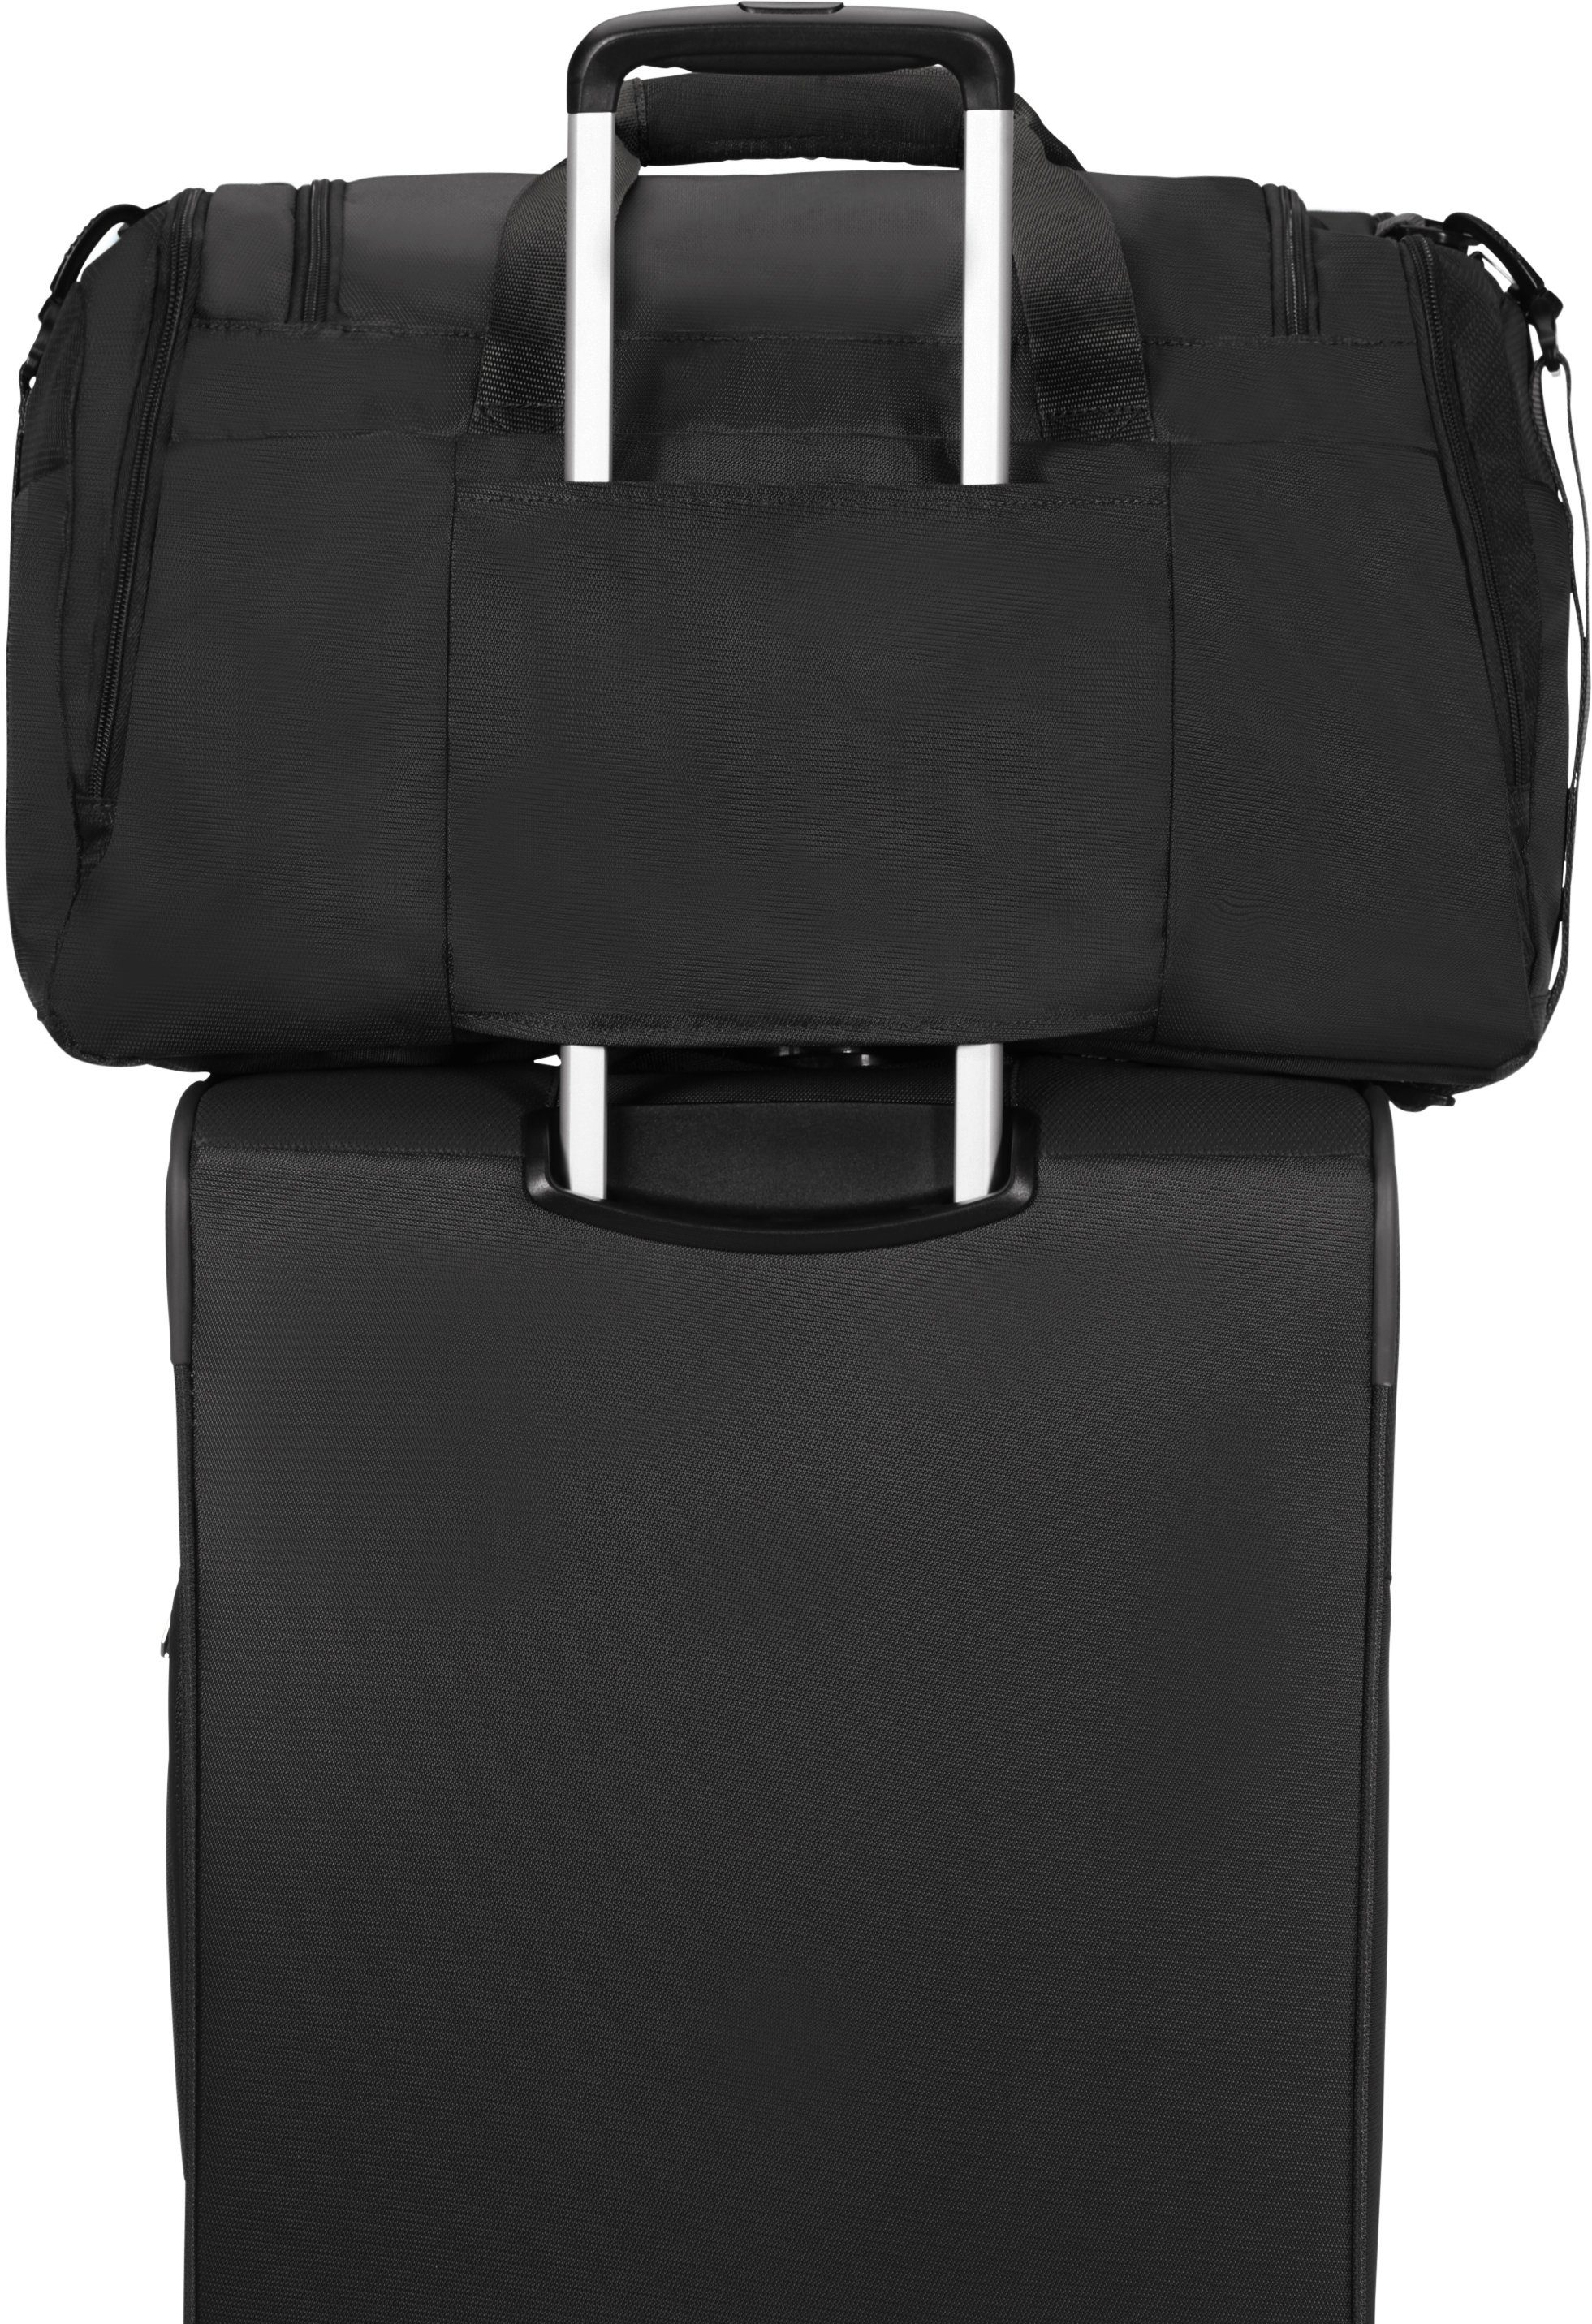 Tourister® Reisetasche American schwarz mit Trolley-Aufsteck-System Summerfunk,